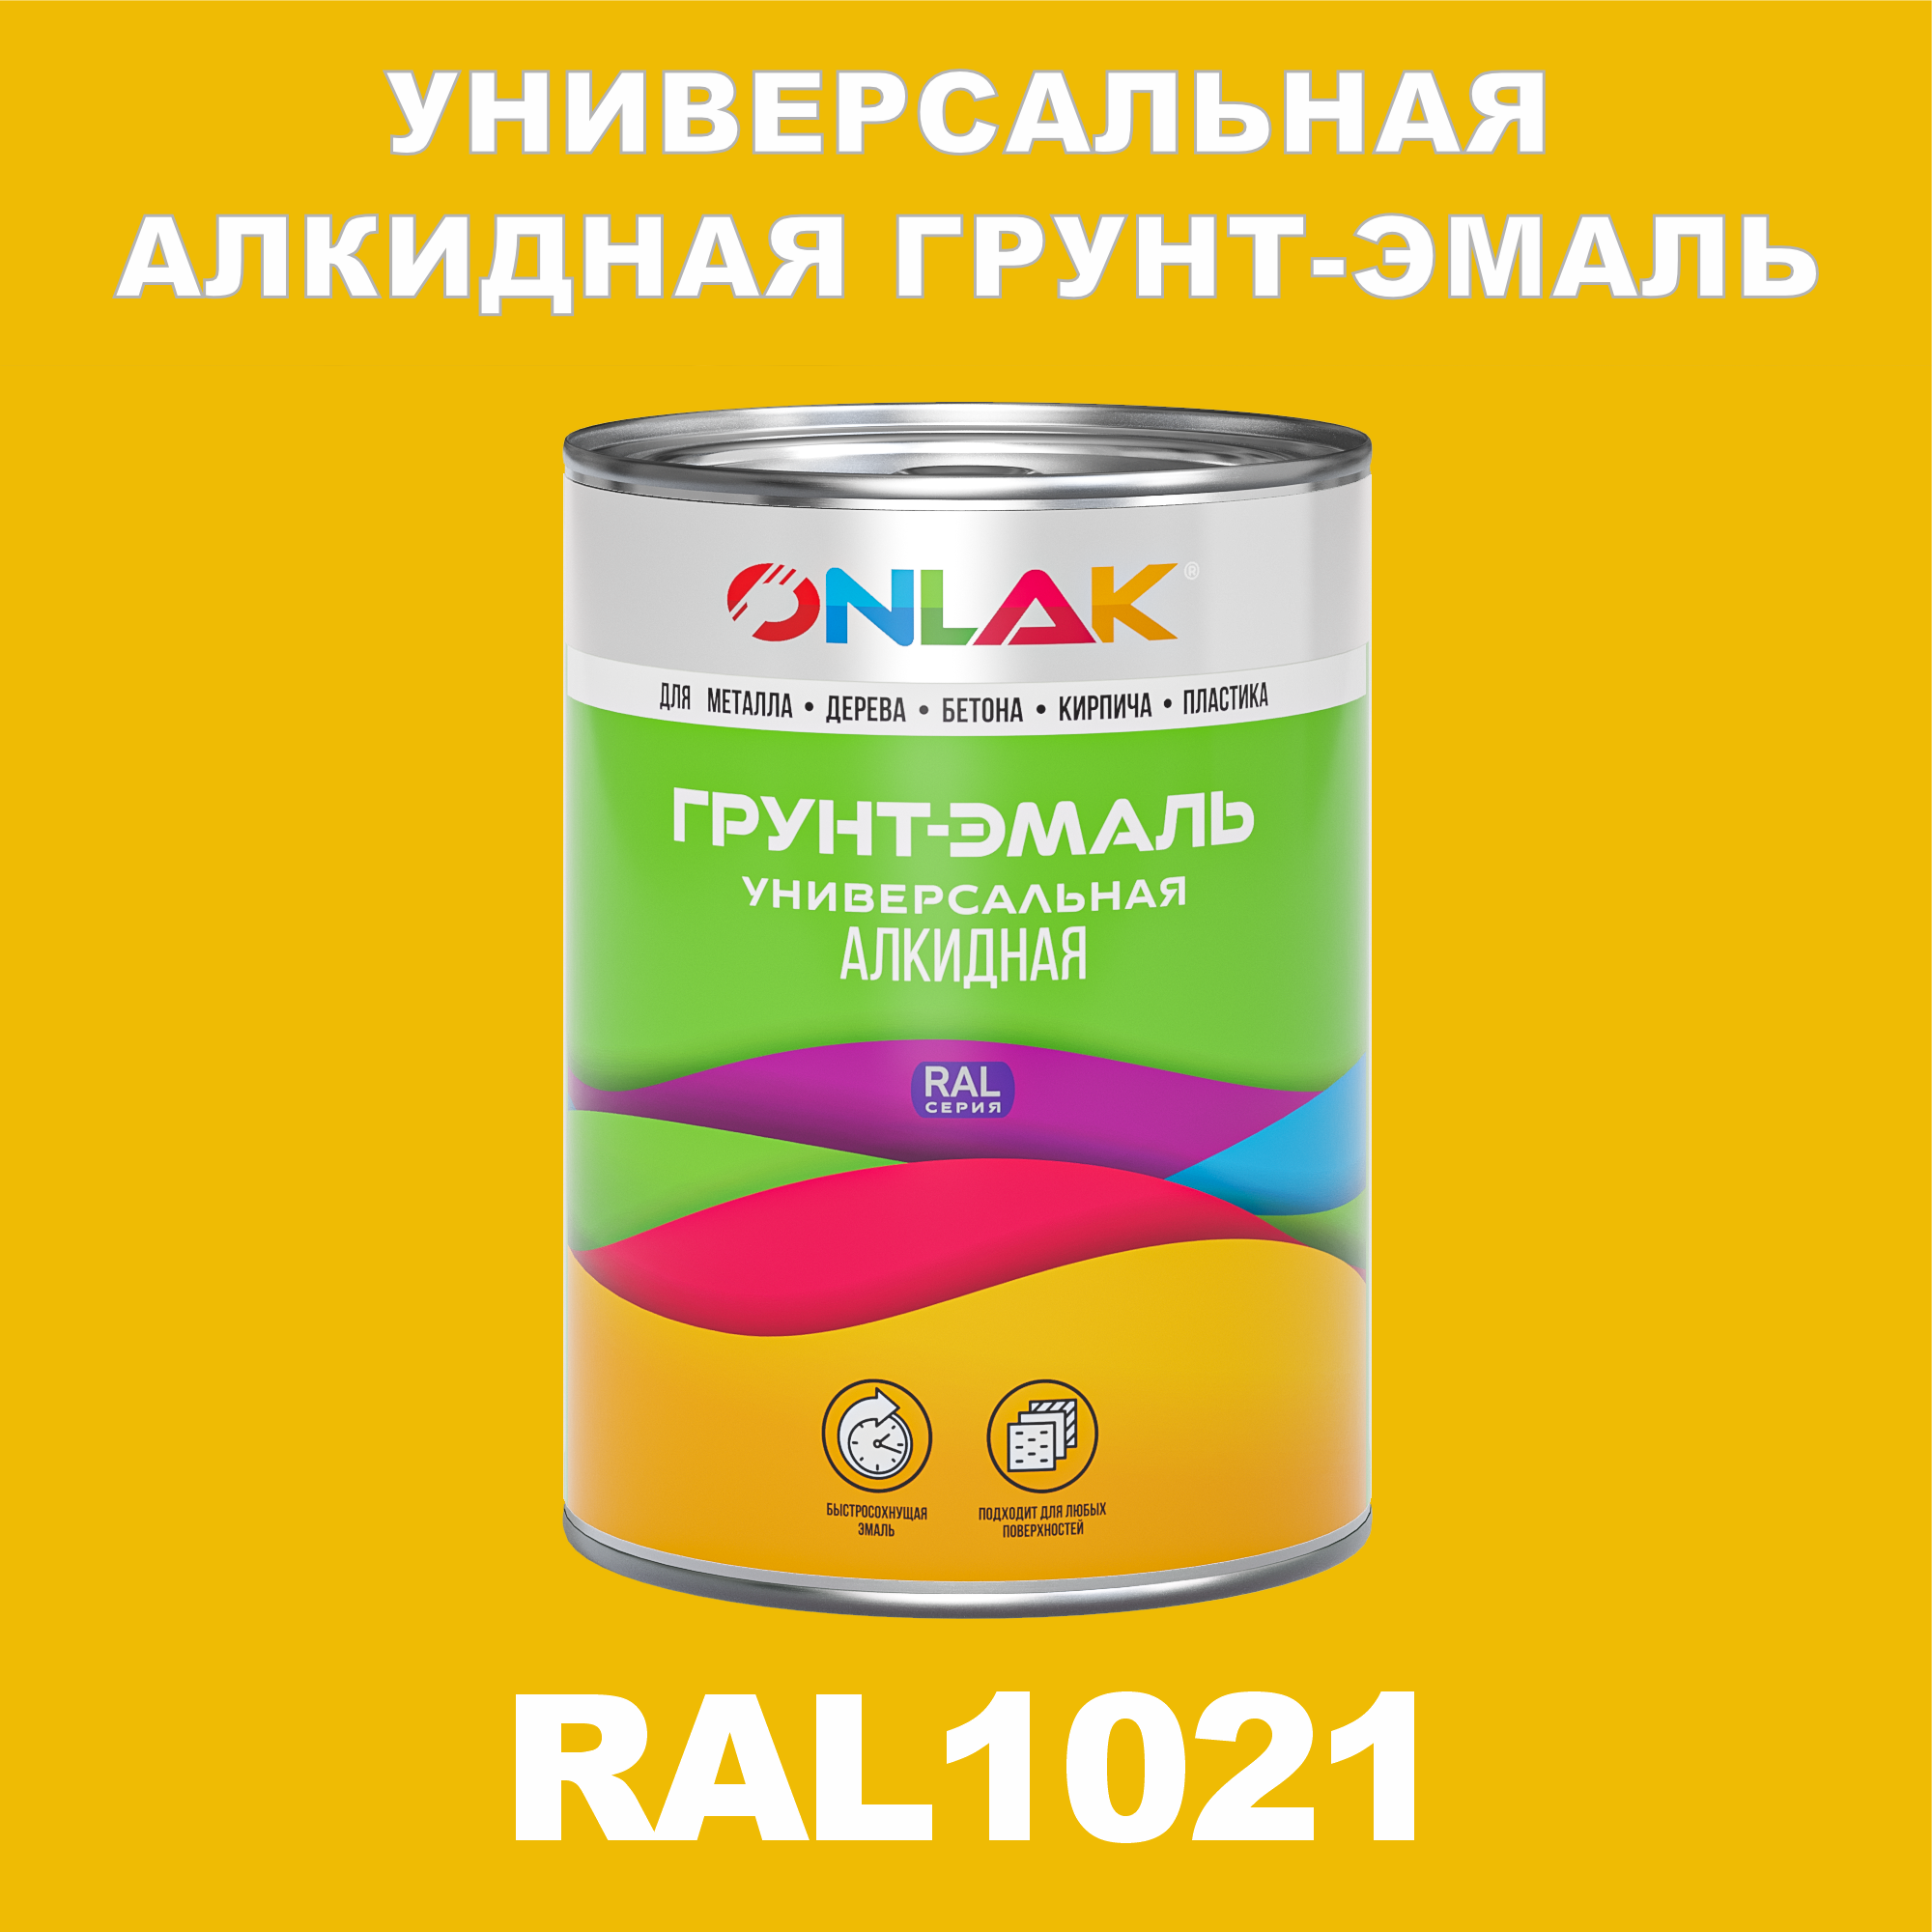 Грунт-эмаль ONLAK 1К RAL1021 антикоррозионная алкидная по металлу по ржавчине 1 кг грунт эмаль аэрозольная престиж 3в1 алкидная коричневая ral 8017 425 мл 0 425 кг